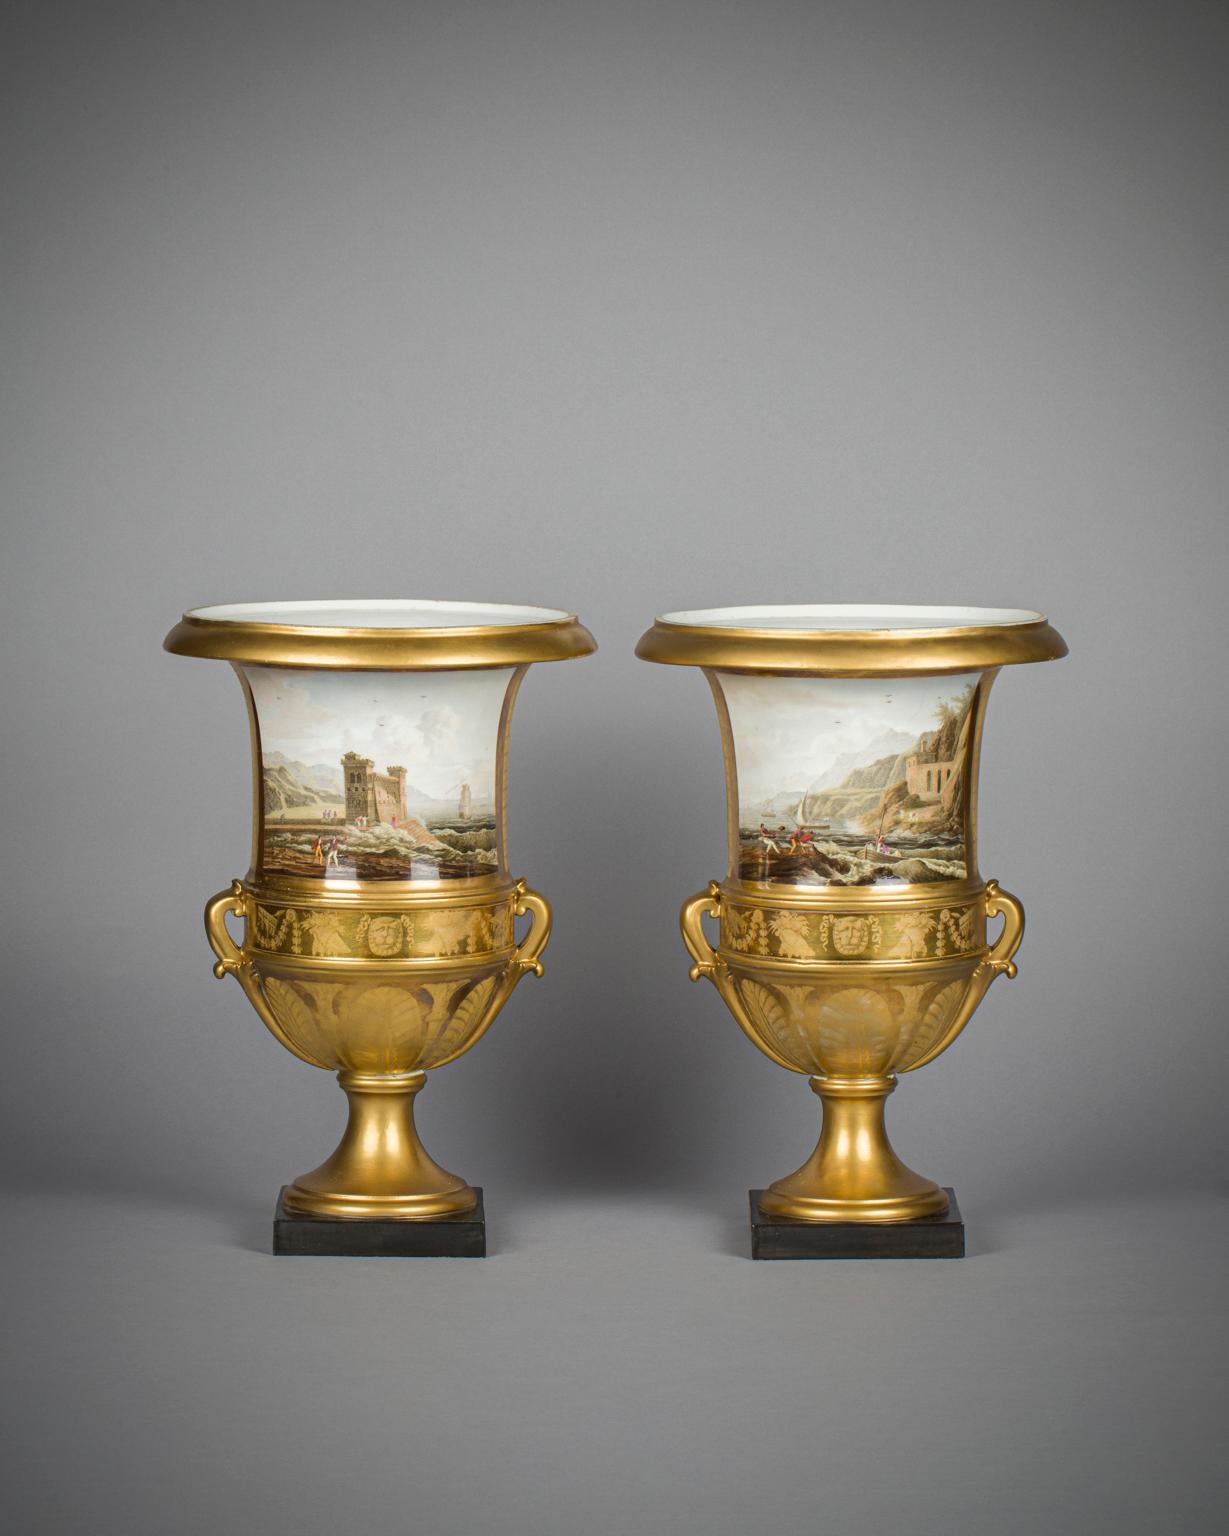 In Anlehnung an die Gemälde des französischen Malers Eustace Le Sueur (1616-1655) sind auf der linken Vase die Musen Clio, Euterpe und Thalia und auf der rechten Vase die Musen Melpomene, Erato und Polyhymnia dargestellt. (Beide Gemälde befinden